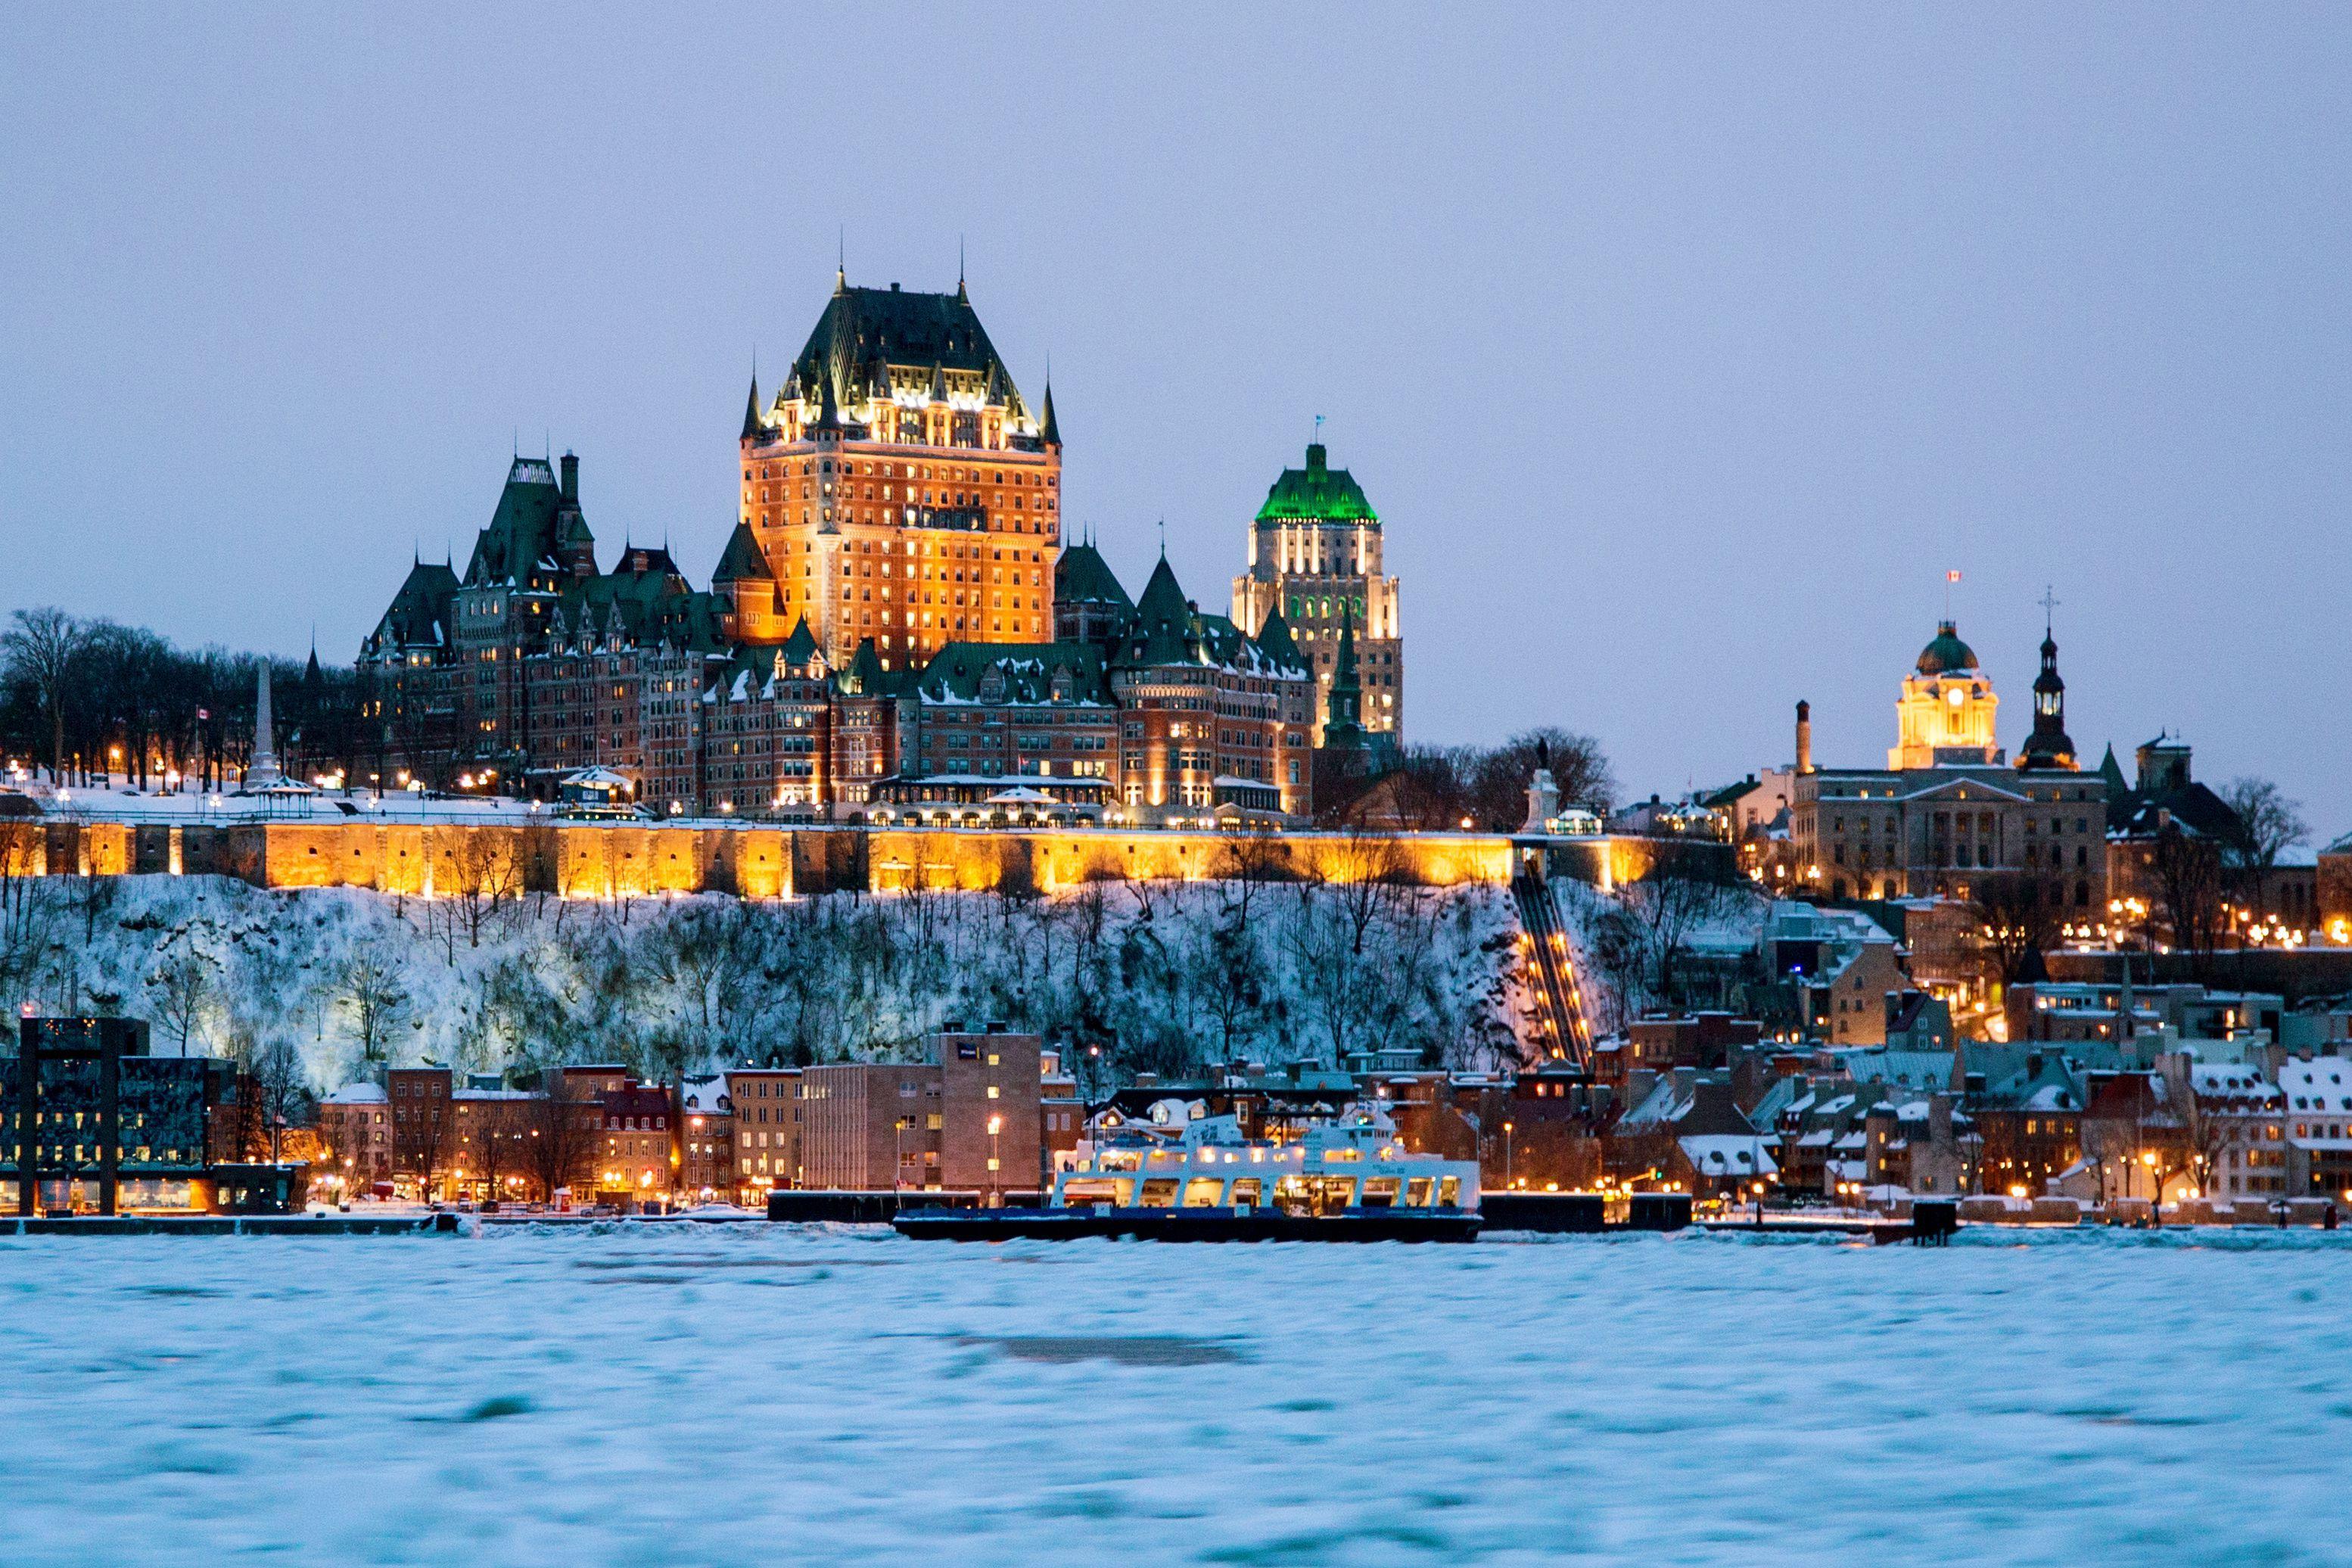 Fairmont Le Chateau Frontenac - Quebec City | Canadian Affair